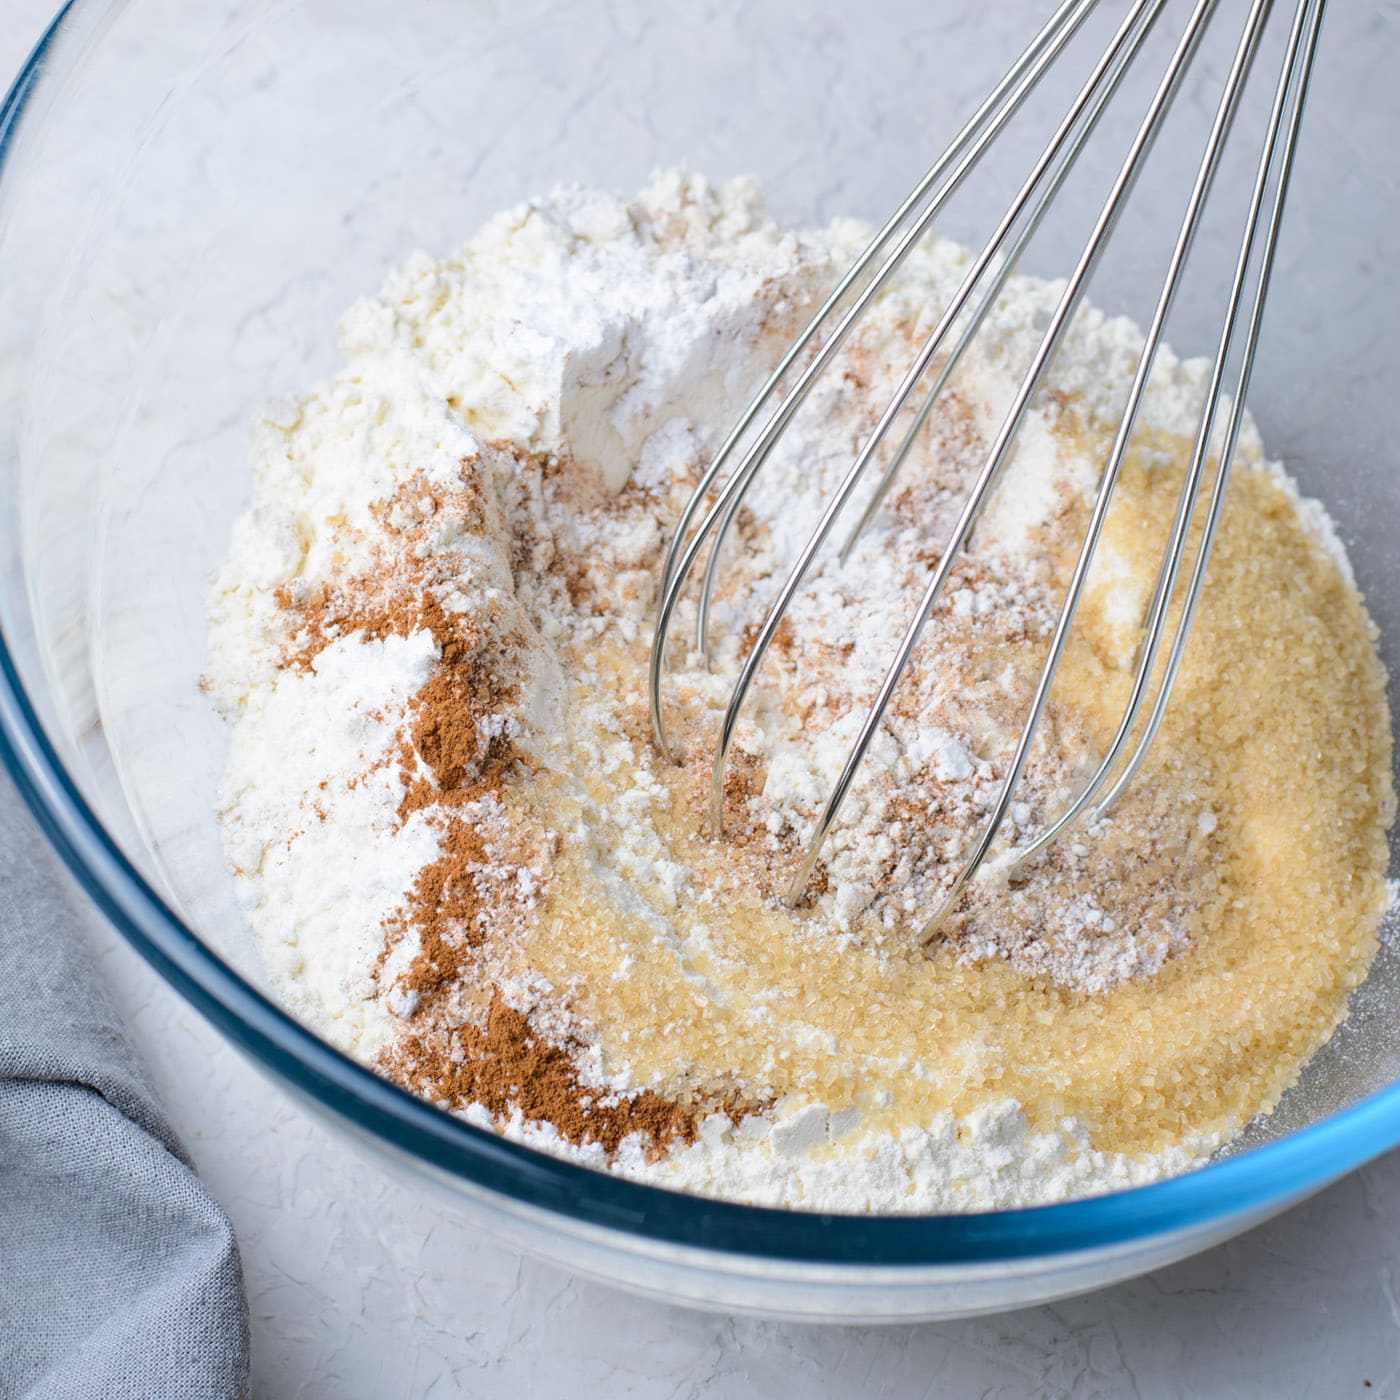 flour, baking powder, brown sugar, salt, and cinnamon mixed in a bowl